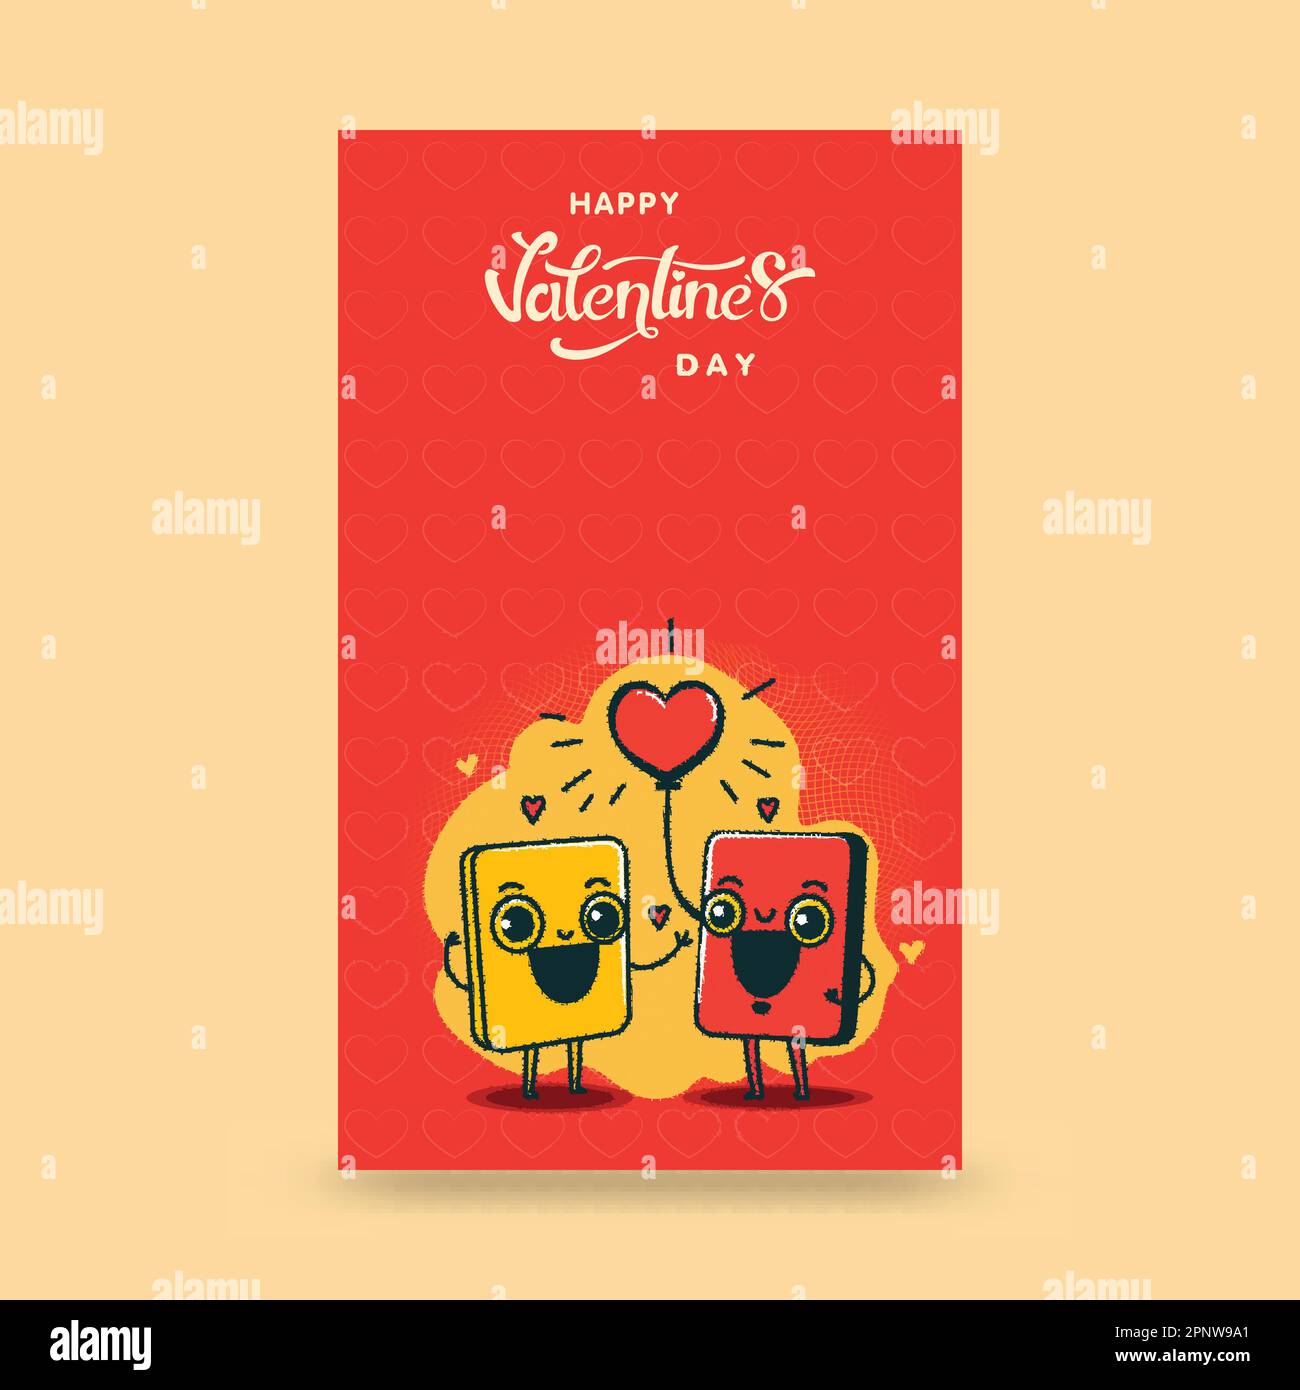 „Happy Valentine's Day“-Vertikalbanner mit lustigem Smartphone-Paar, das auf gelbem und rotem Hintergrund jubelt. Stock Vektor